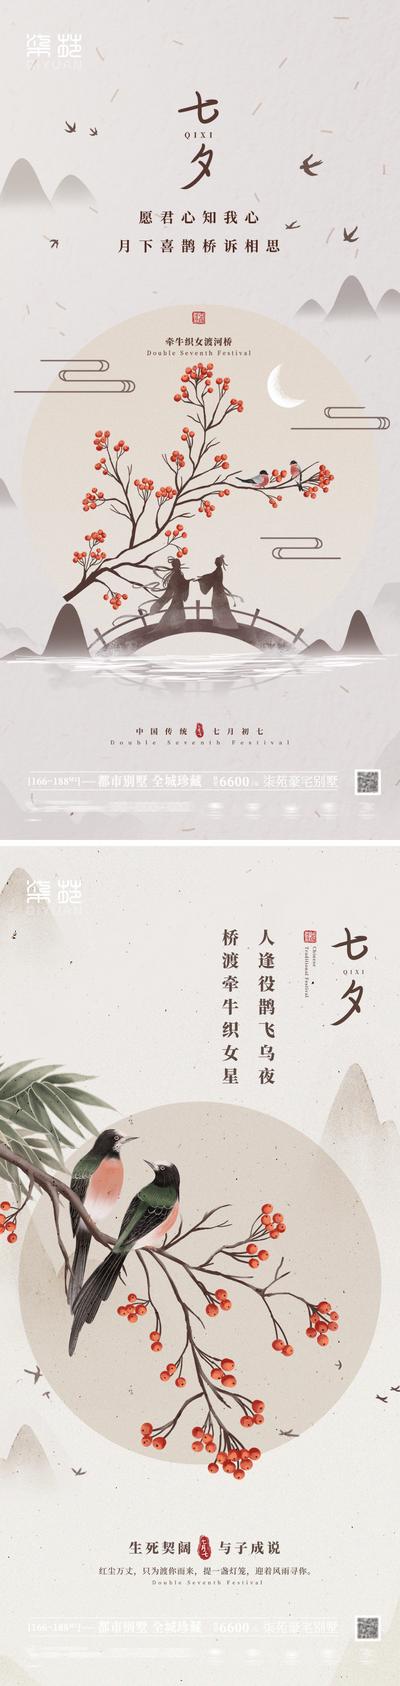 南门网 七夕情人节微信海报